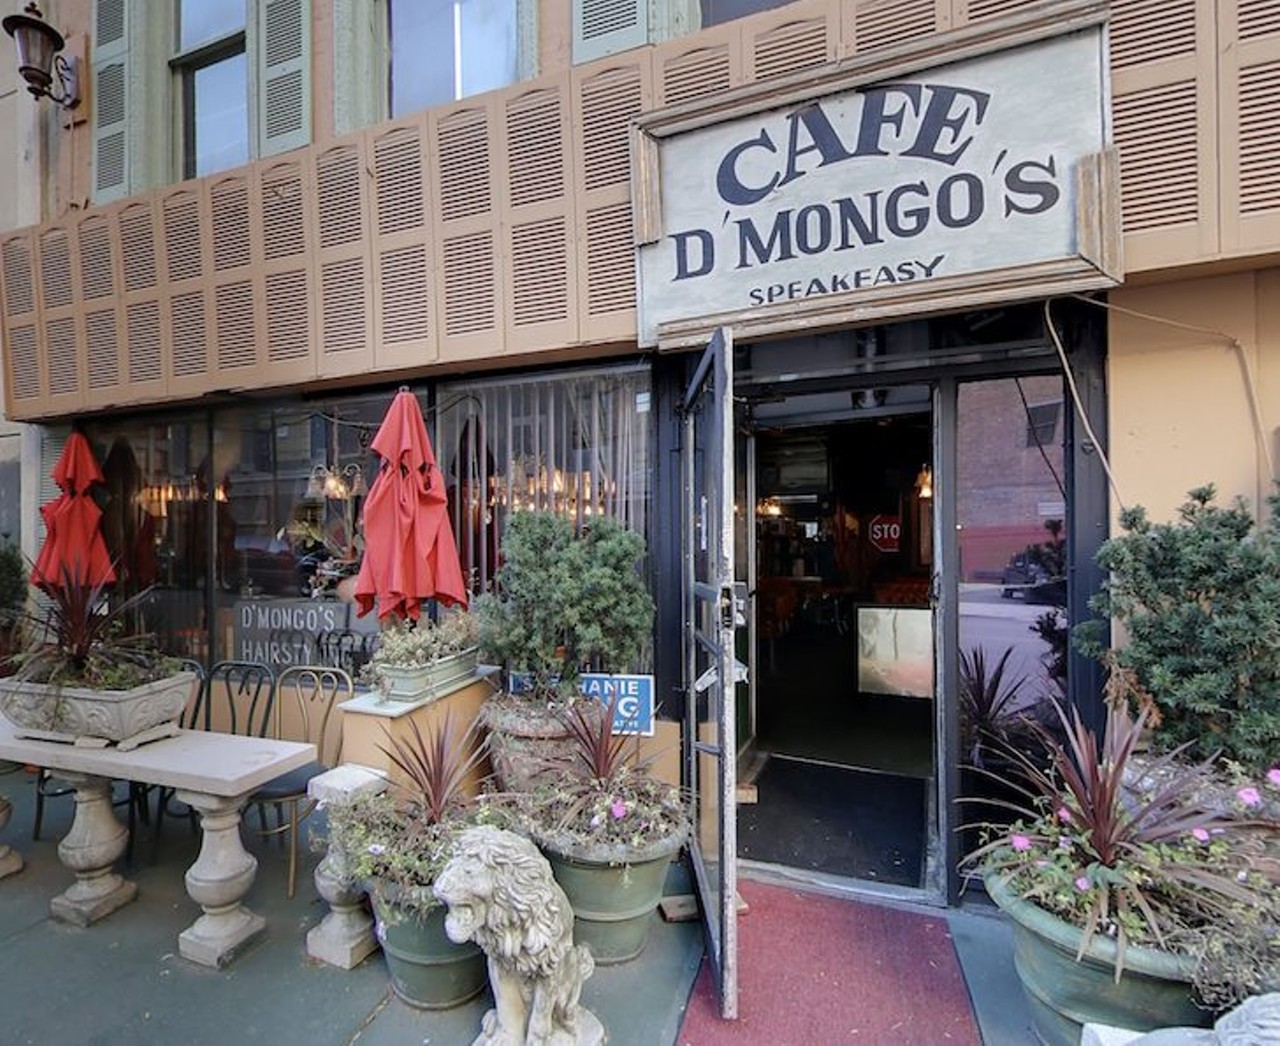 Cafe D'Mongo&#146;s Speakeasy
1439 Griswold St., Detroit
Photo via Google Maps